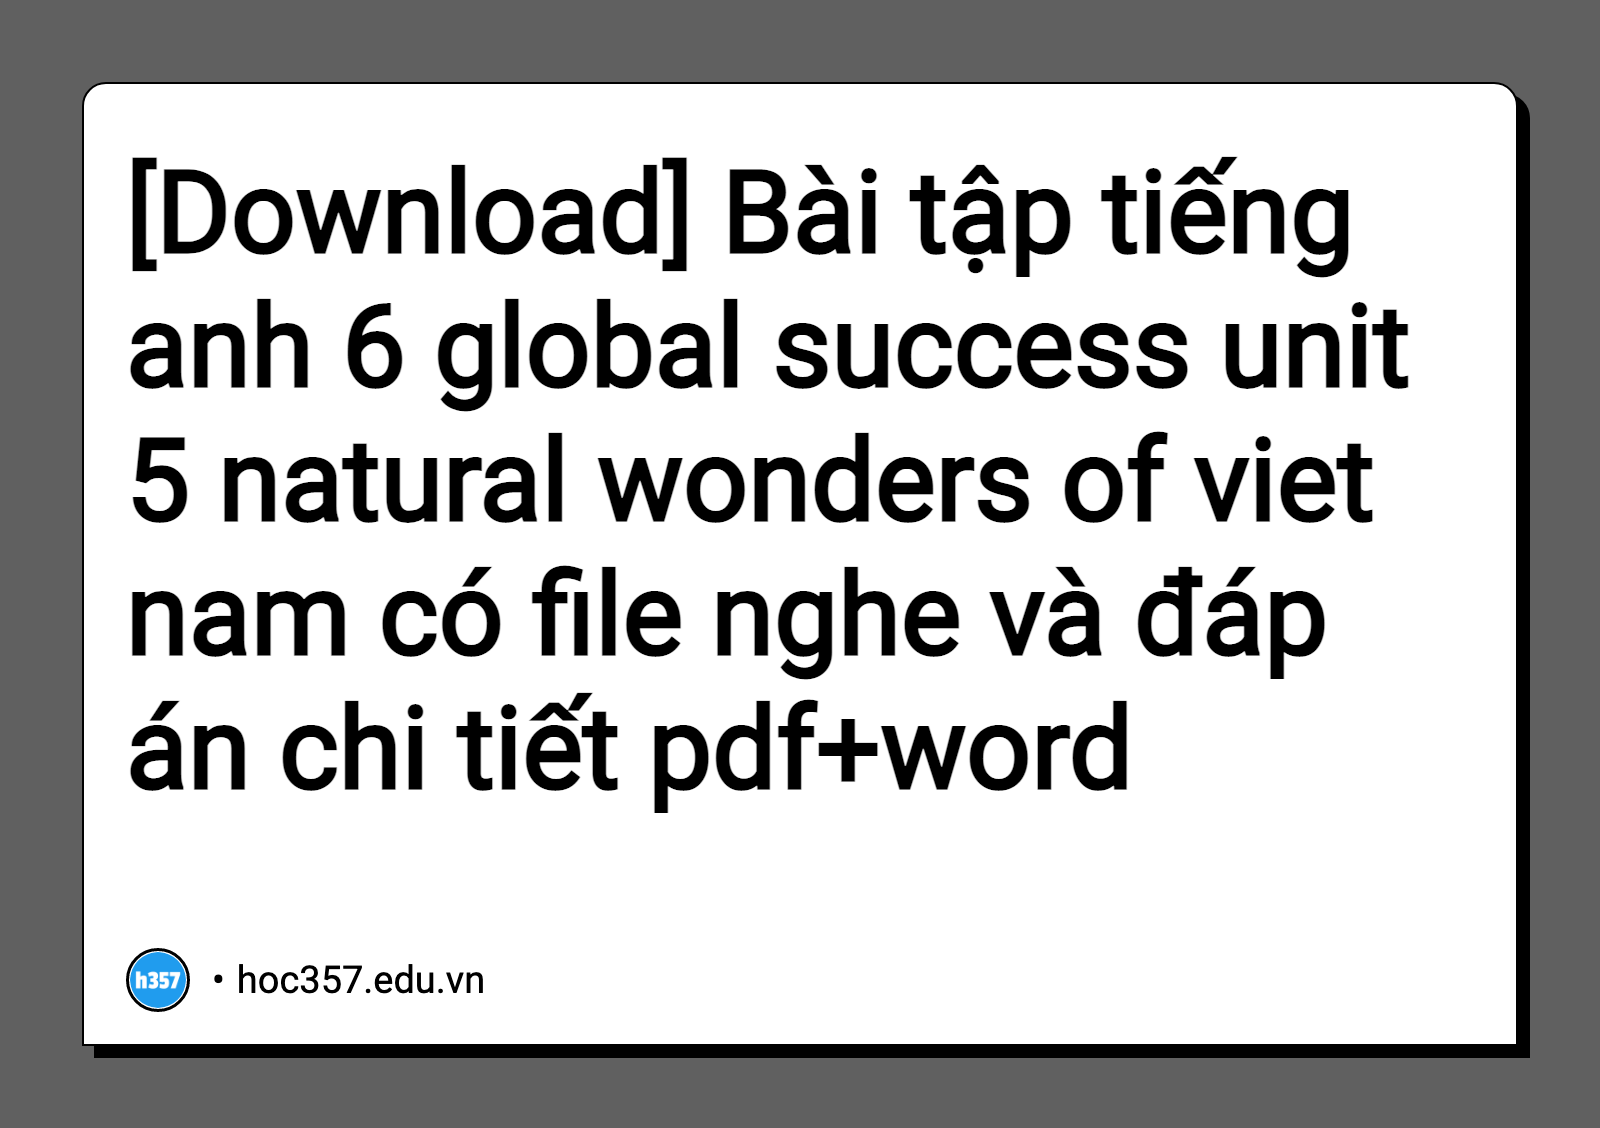 Hình minh họa Bài tập tiếng anh 6 global success unit 5 natural wonders of viet nam có file nghe và đáp án chi tiết